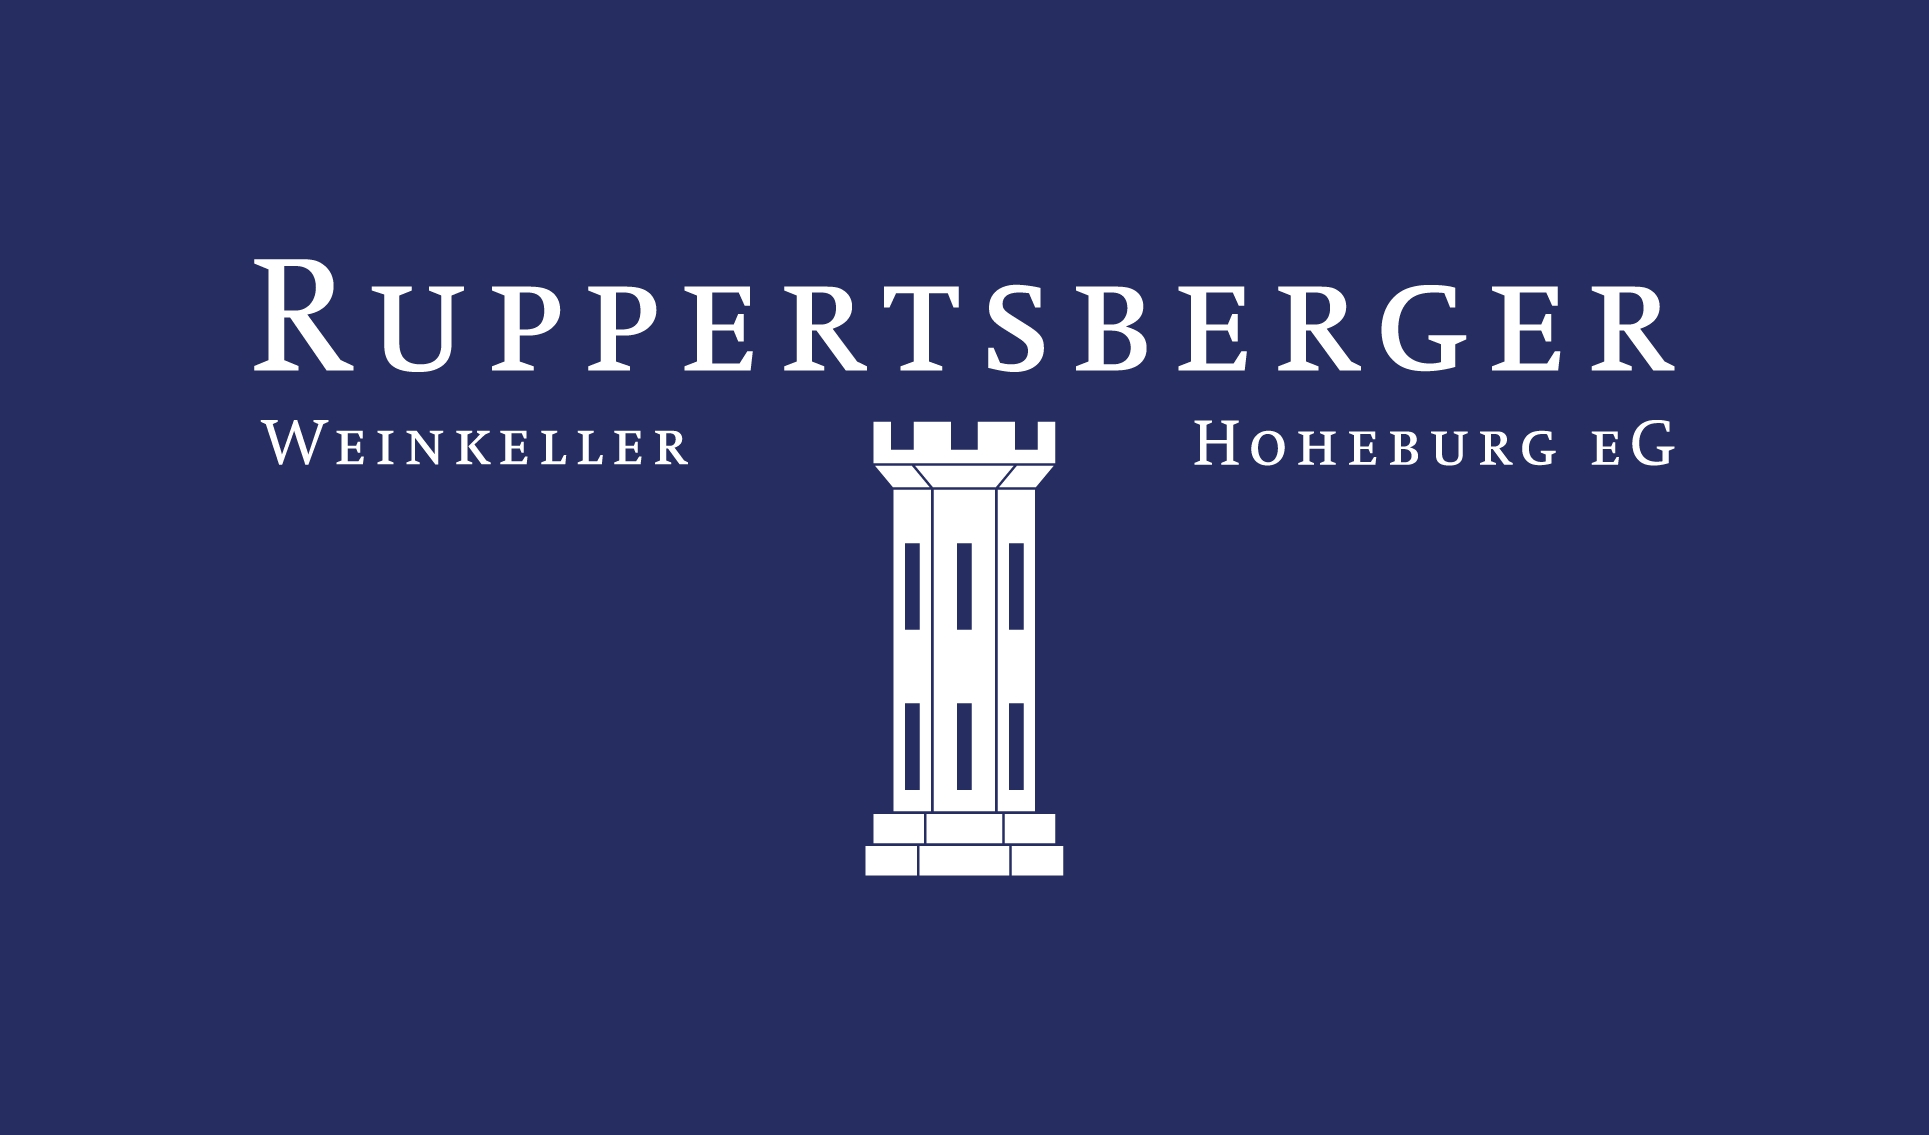 Ruppertsberger Weinkeller Hoheburg eG